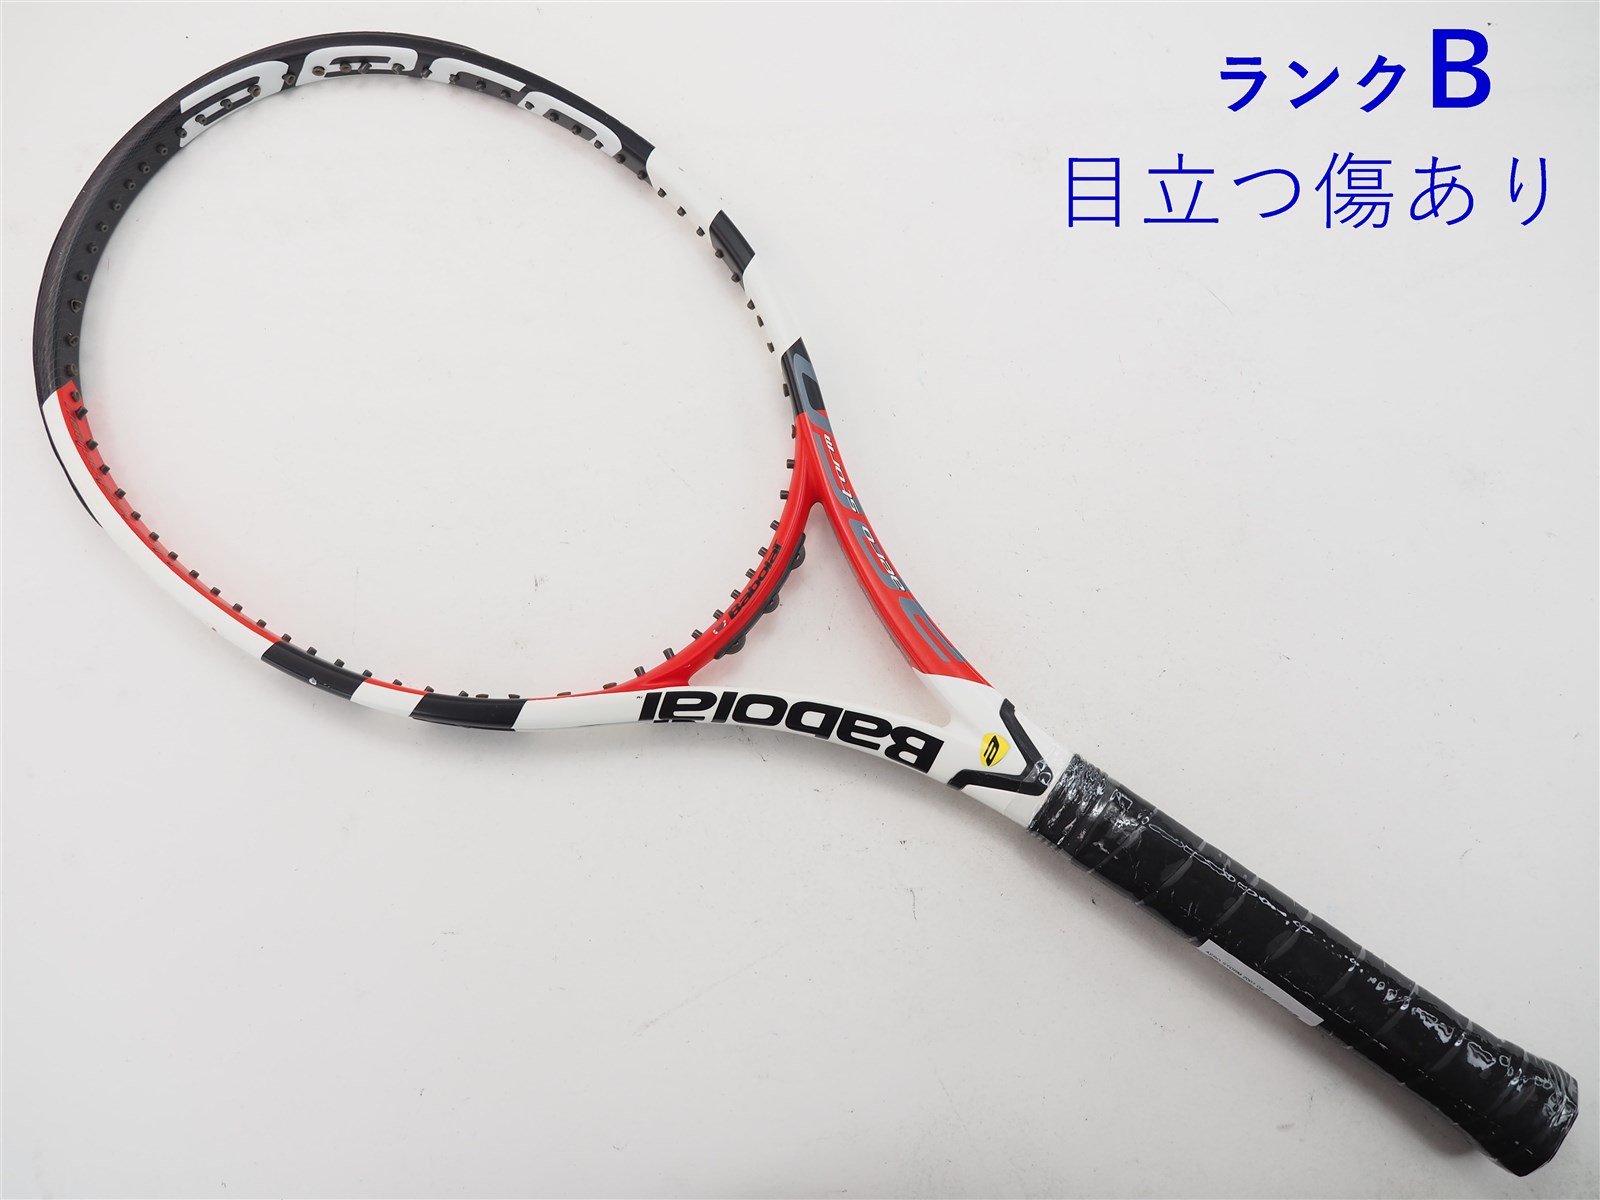 テニスラケット バボラ ピュア ストーム 2007年モデル【トップバンパー割れ有り】 (G2)BABOLAT PURE STORM 2007